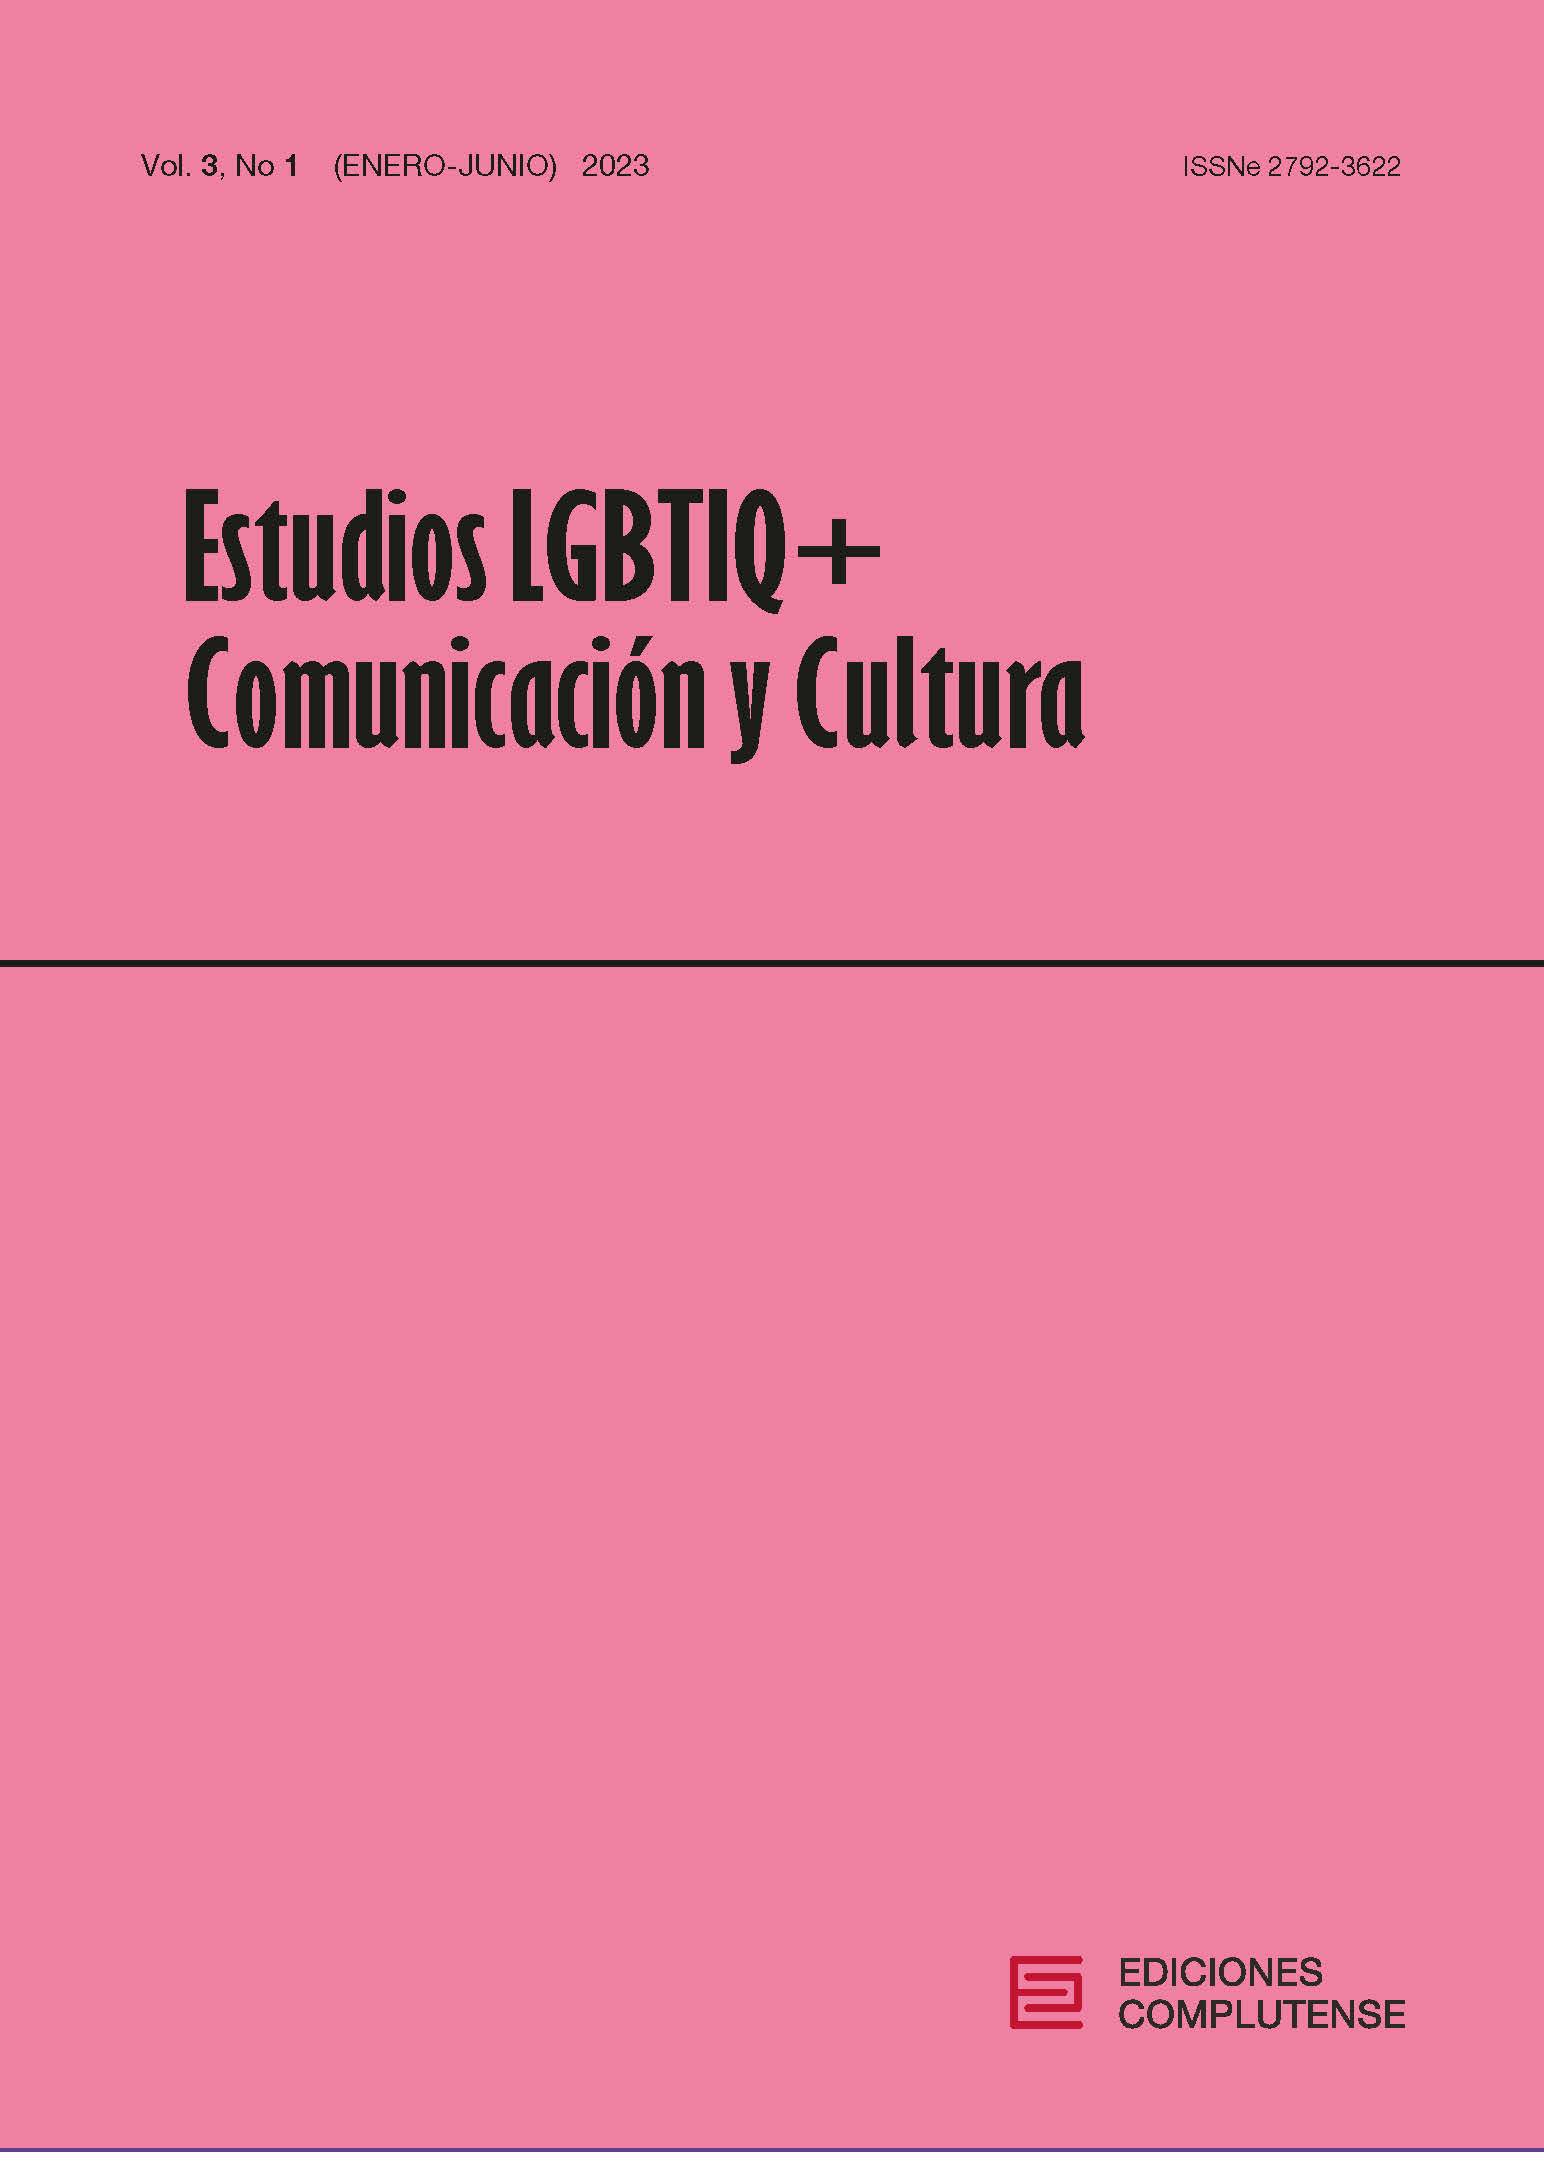 Estudios LGBTIQ+, Comunicación y Cultura 3(1) 2023